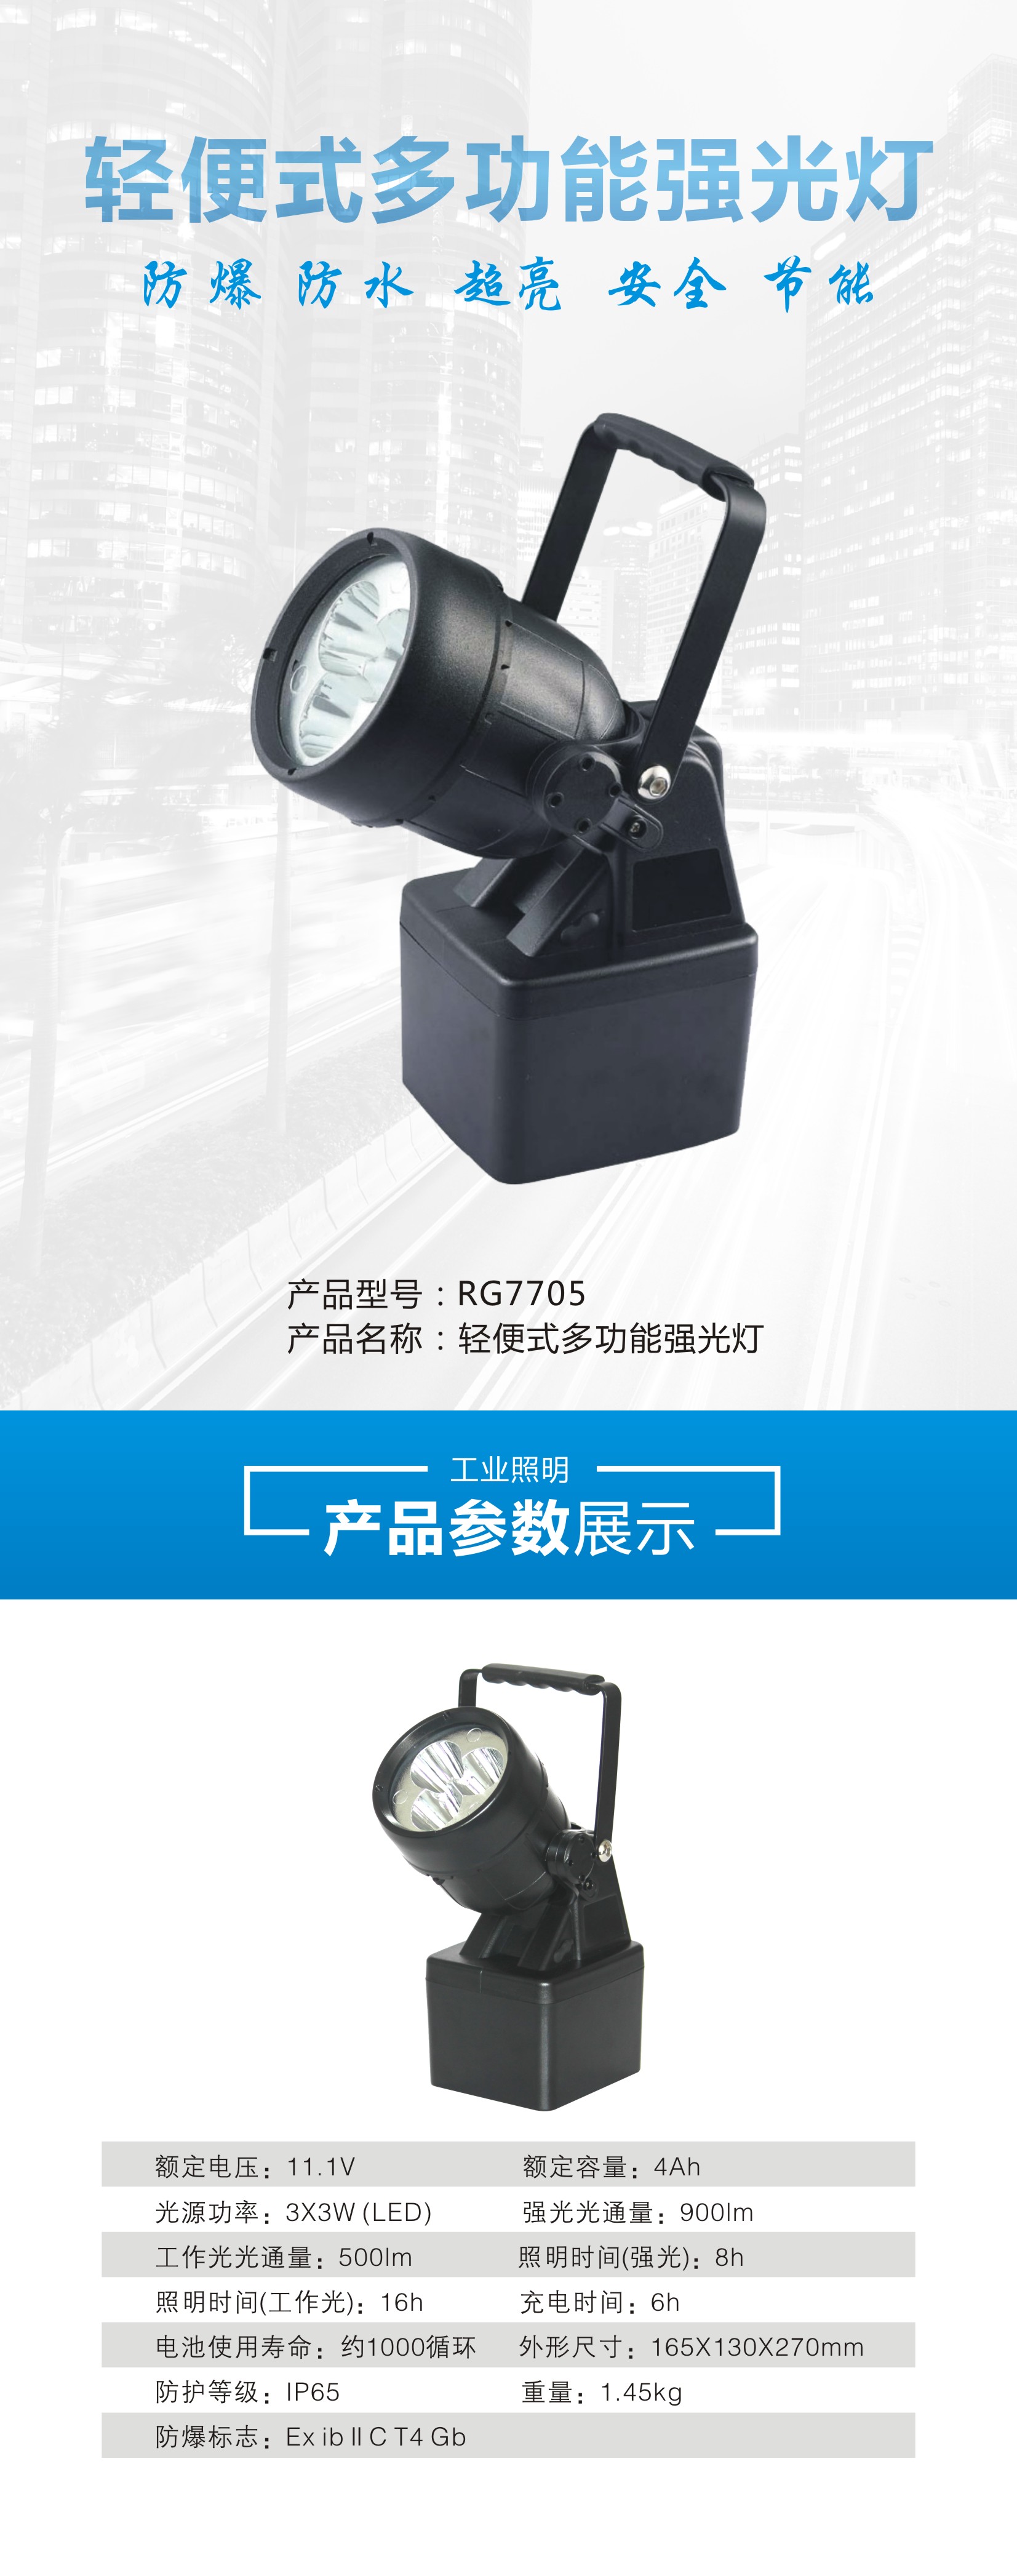 润光照明多功能检修作业灯DSFY-6203